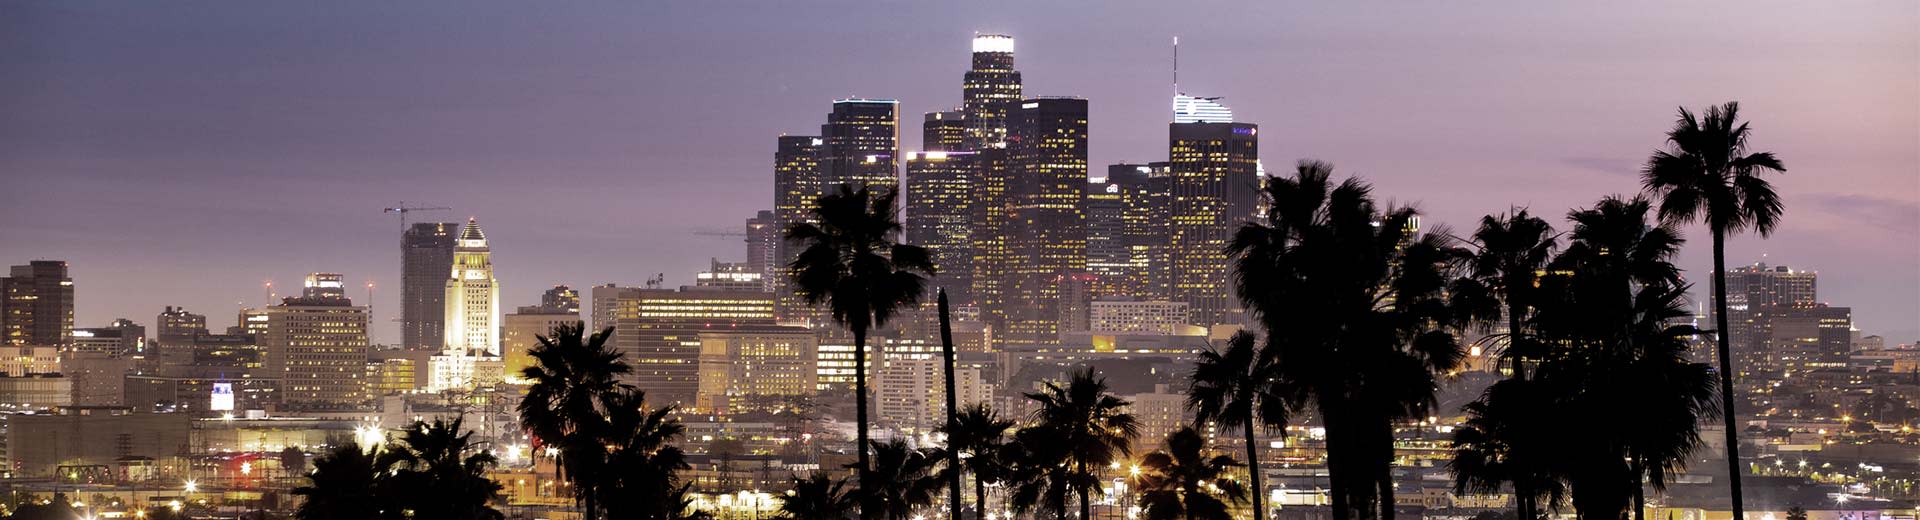 Palmen in der Nacht und die Wolkenkratzer in der Innenstadt von Los Angeles leuchten den Himmel.